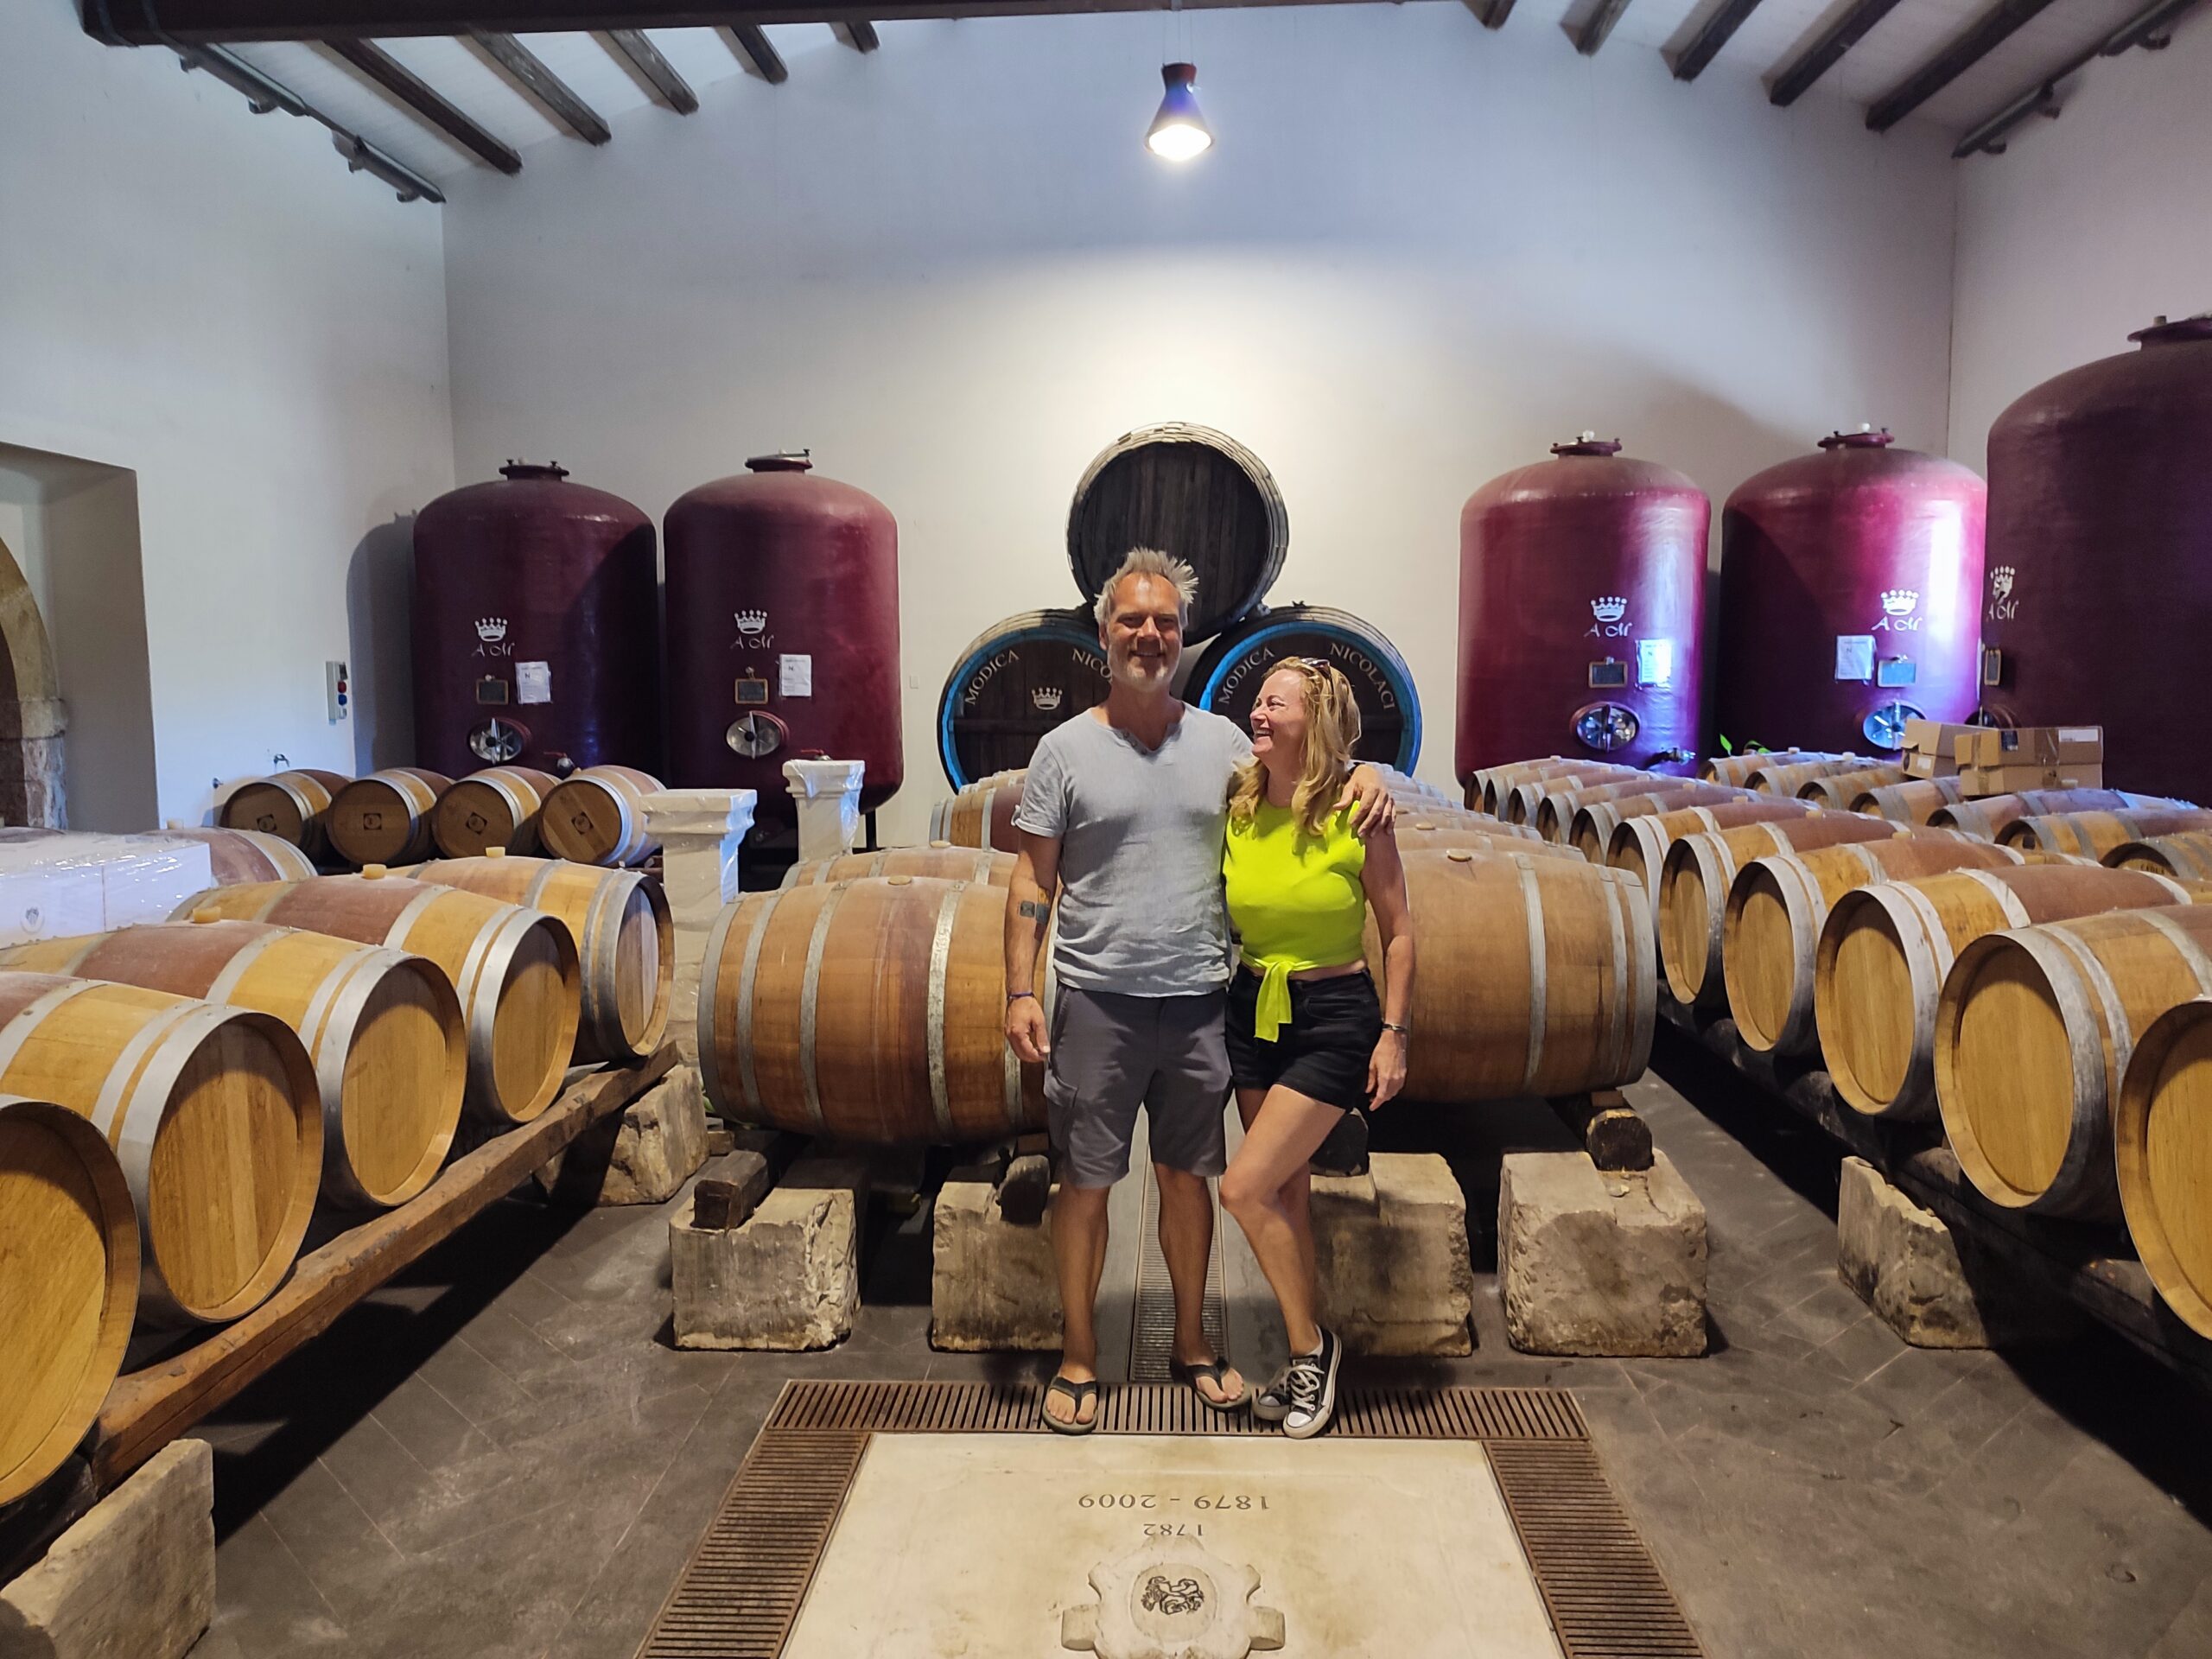 wijnkelder in Sicilie bij Felici Modica in de plaats Noto tussen de wijnvaten en wijntanks mooi wijnhuis die hun wijnen met passie maakt